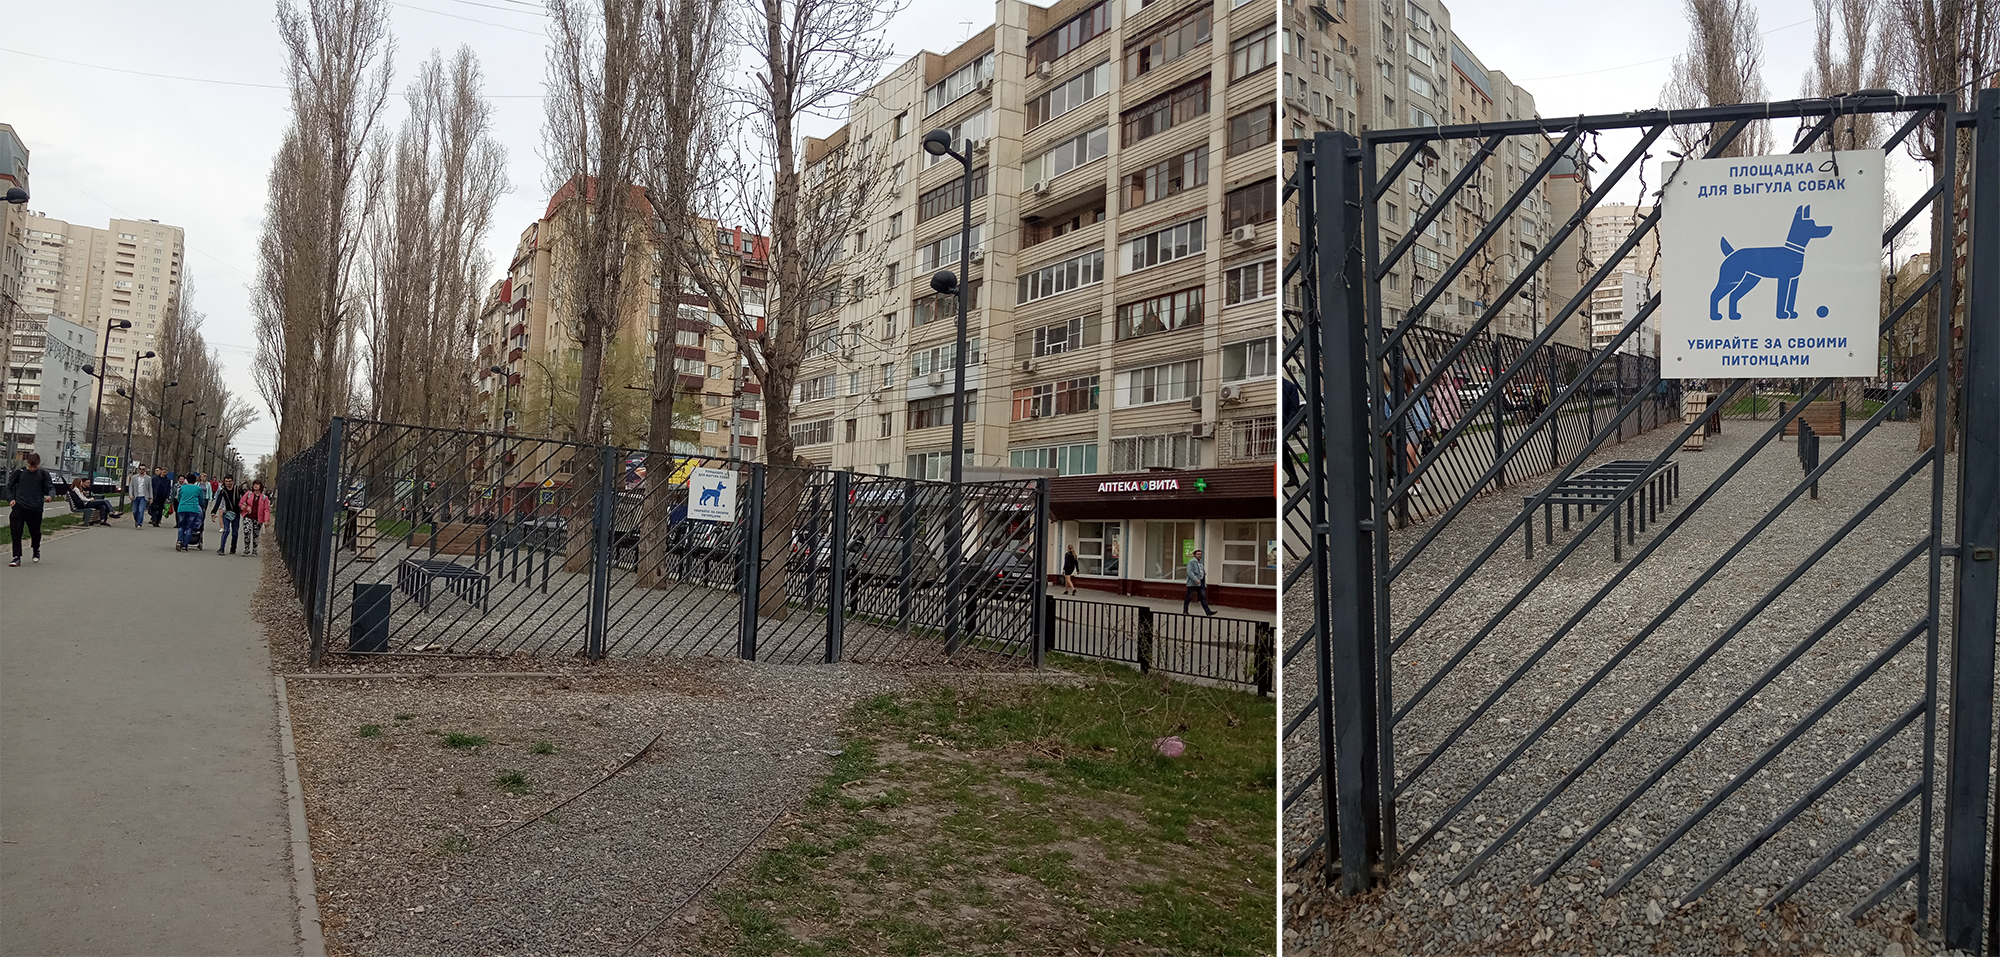 В Саратове площадка для выгула собак выглядит вот так: огорожена забором, обозначена информационной табличкой, посыпана гравием. От моего дома до такой площадки 3 км